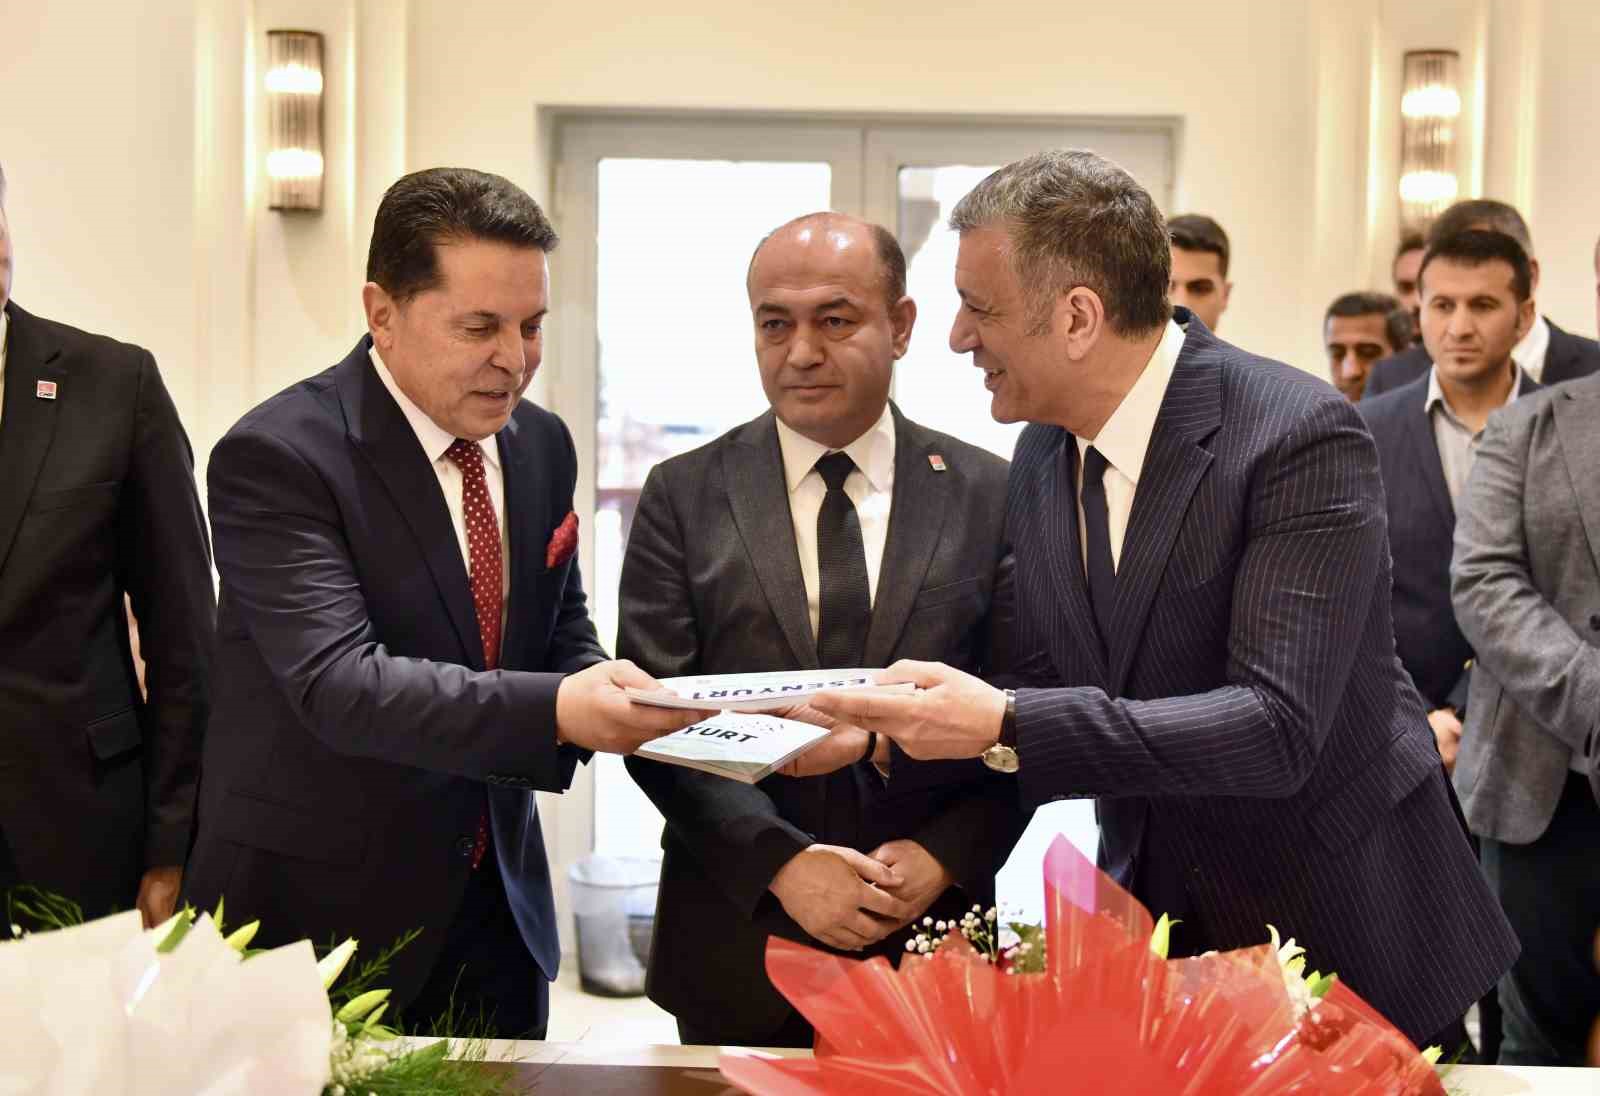 Esenyurt Belediye Başkanı Prof. Dr. Ahmet Özer mazbatasını aldı
